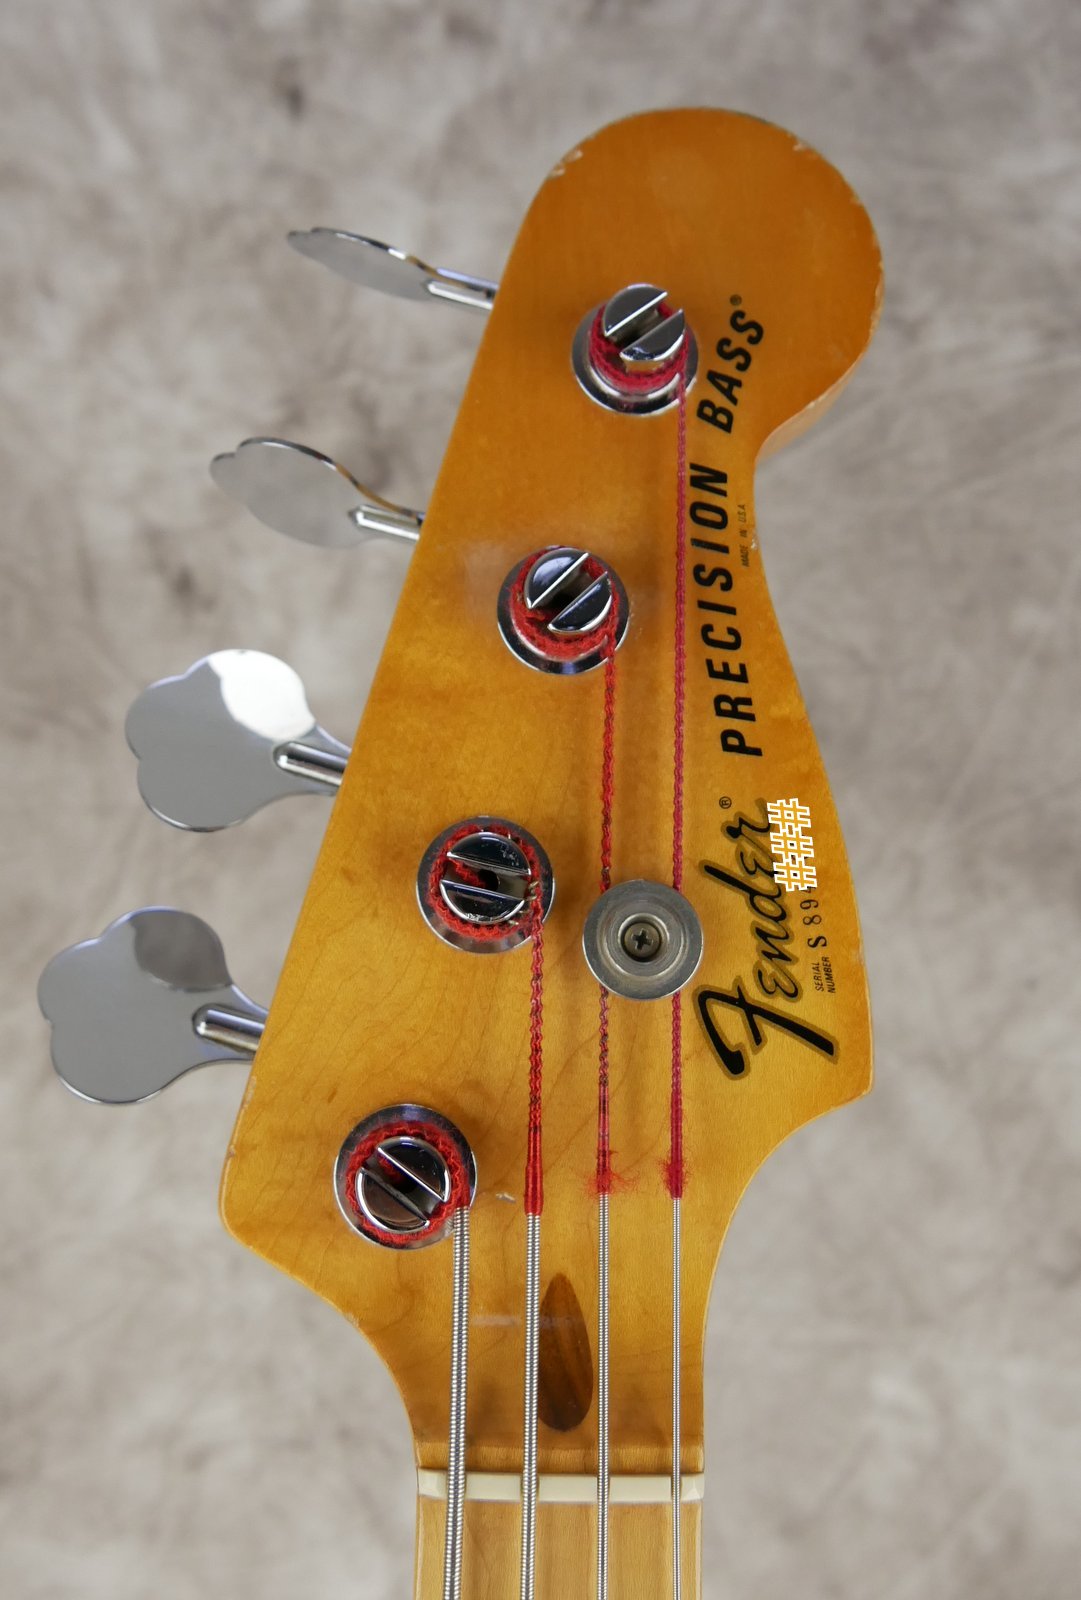 Fender-Precision-Bass-1979-sunburst-005.JPG